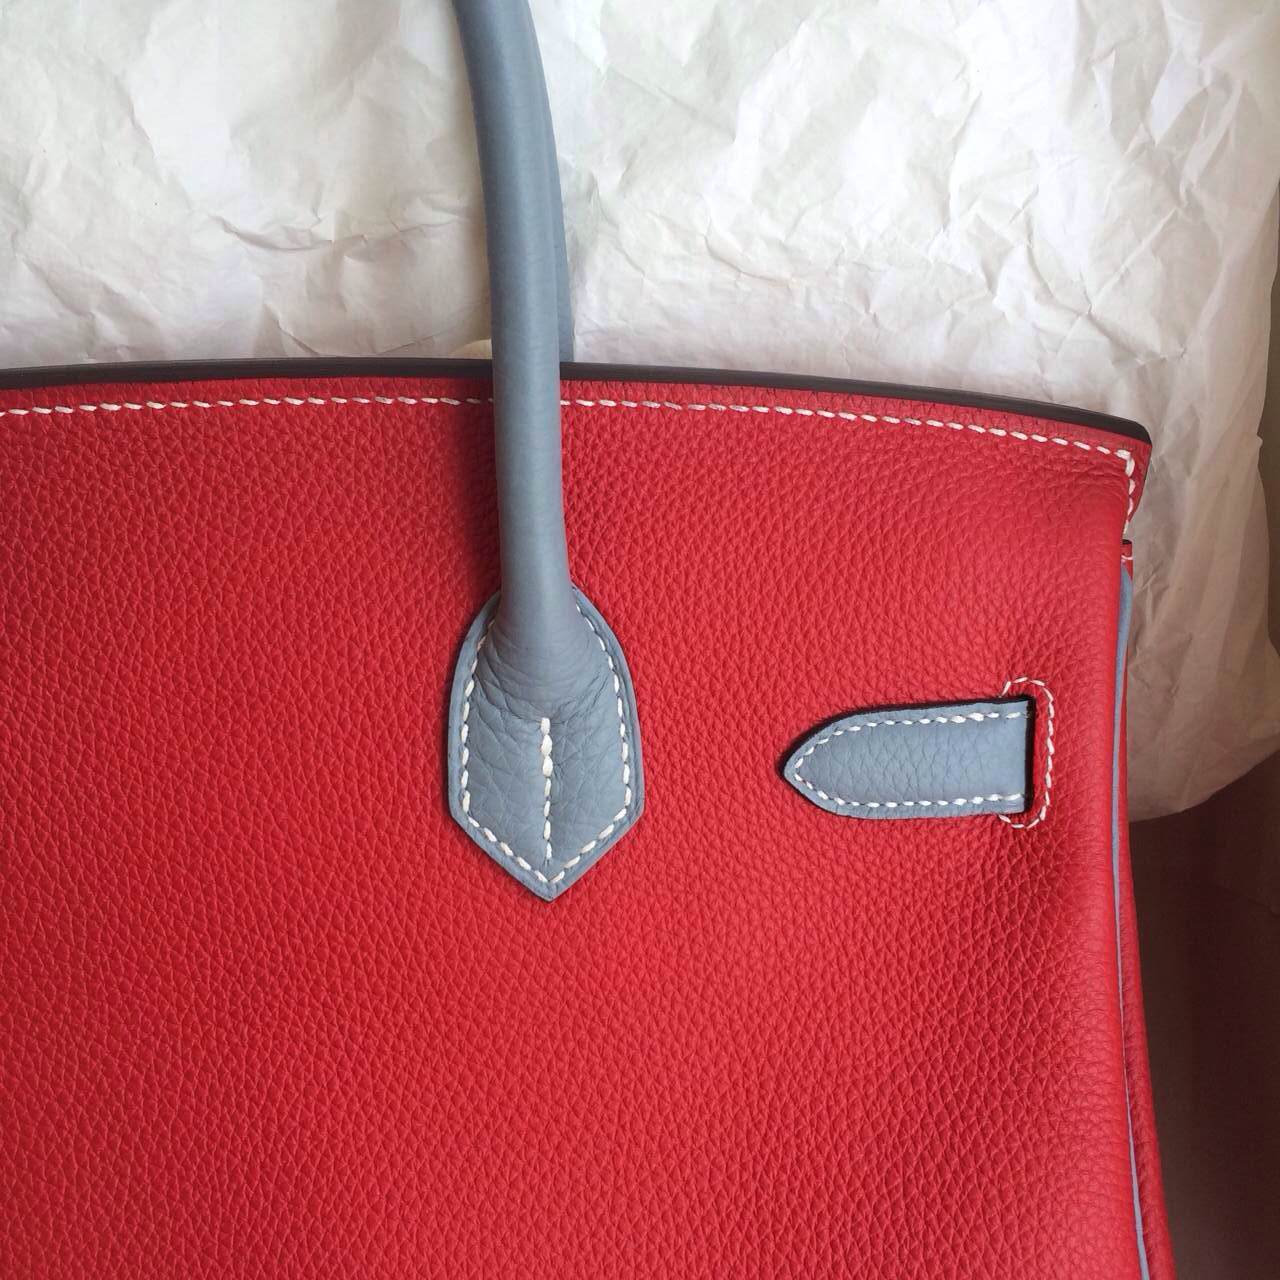 Fashion Hermes Birkin Bag 30cm Q5 Candy Red/J7 Blue Lin France Togo Leather